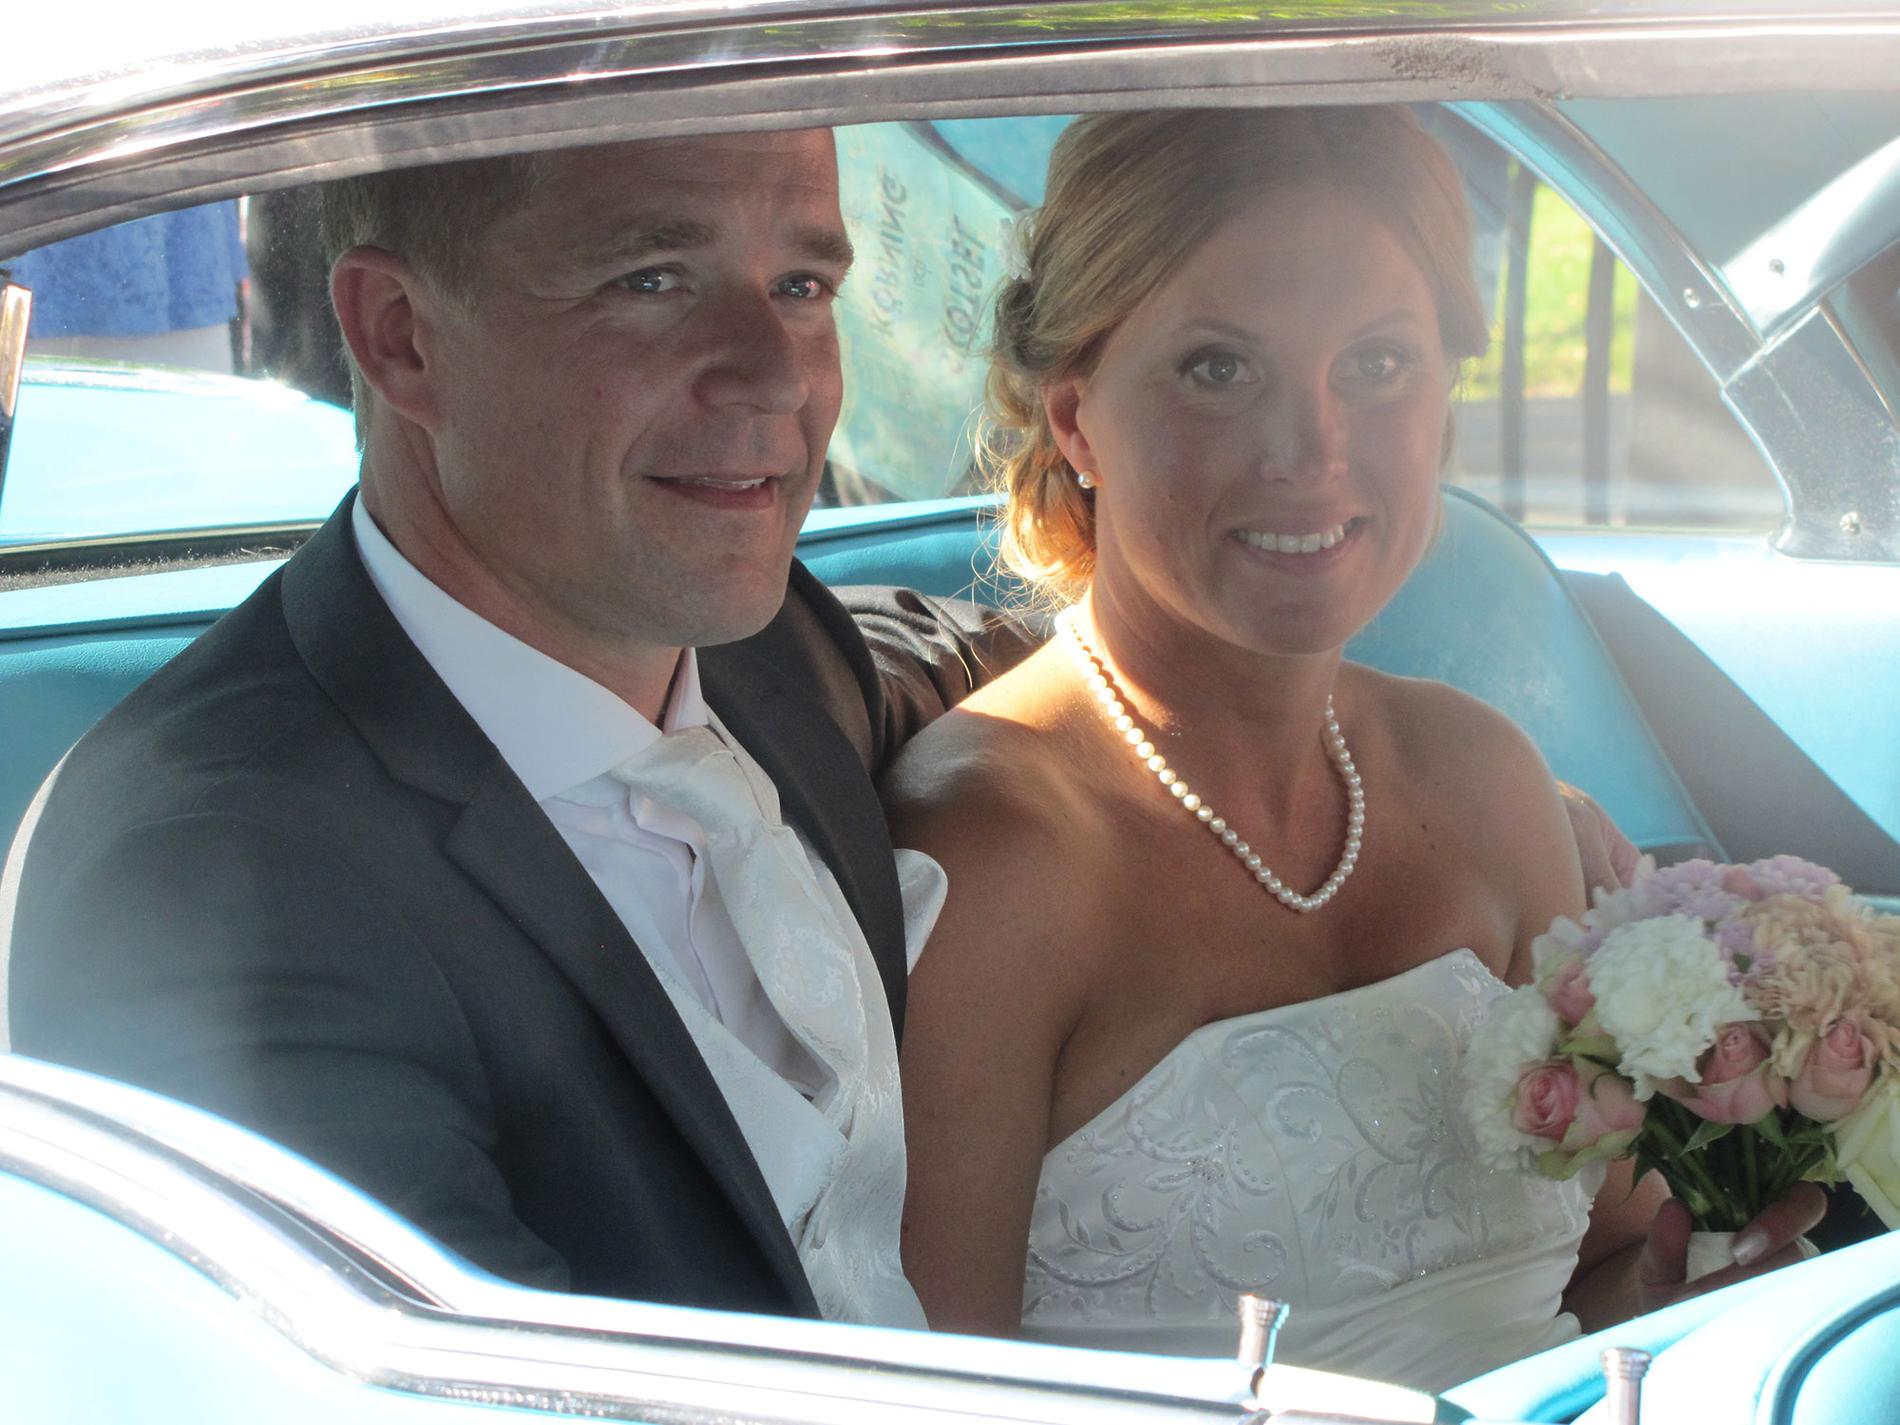 Efter 18 år tillsammans har de gift sig. ”Dagen var över all förväntan”, säger Tommy Tuike.